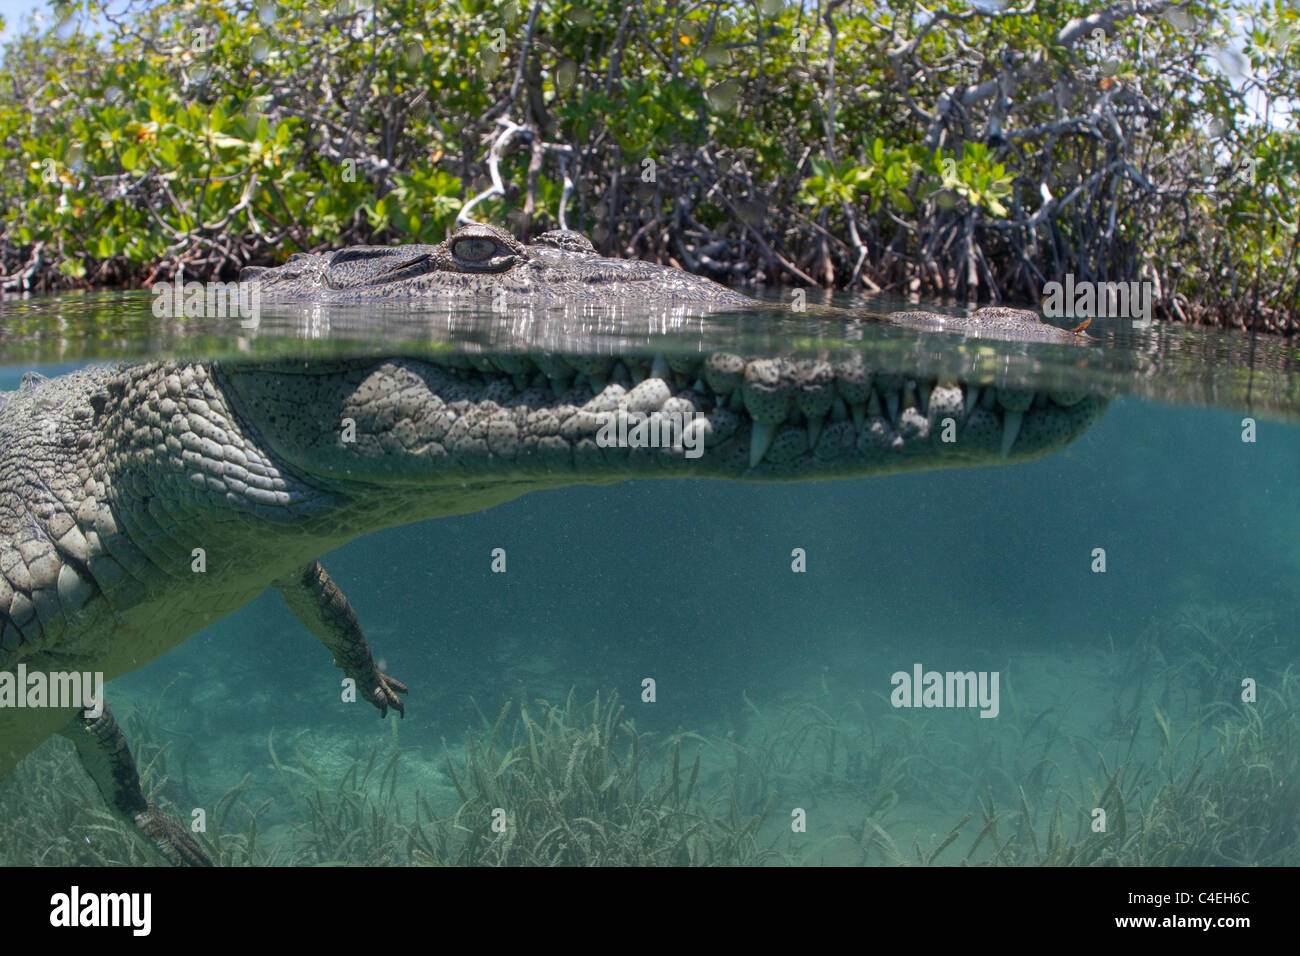 Une vue sur l'eau d'un crocodile cubain nageant à travers une forêt de mangrove au large des côtes de Cuba. Banque D'Images